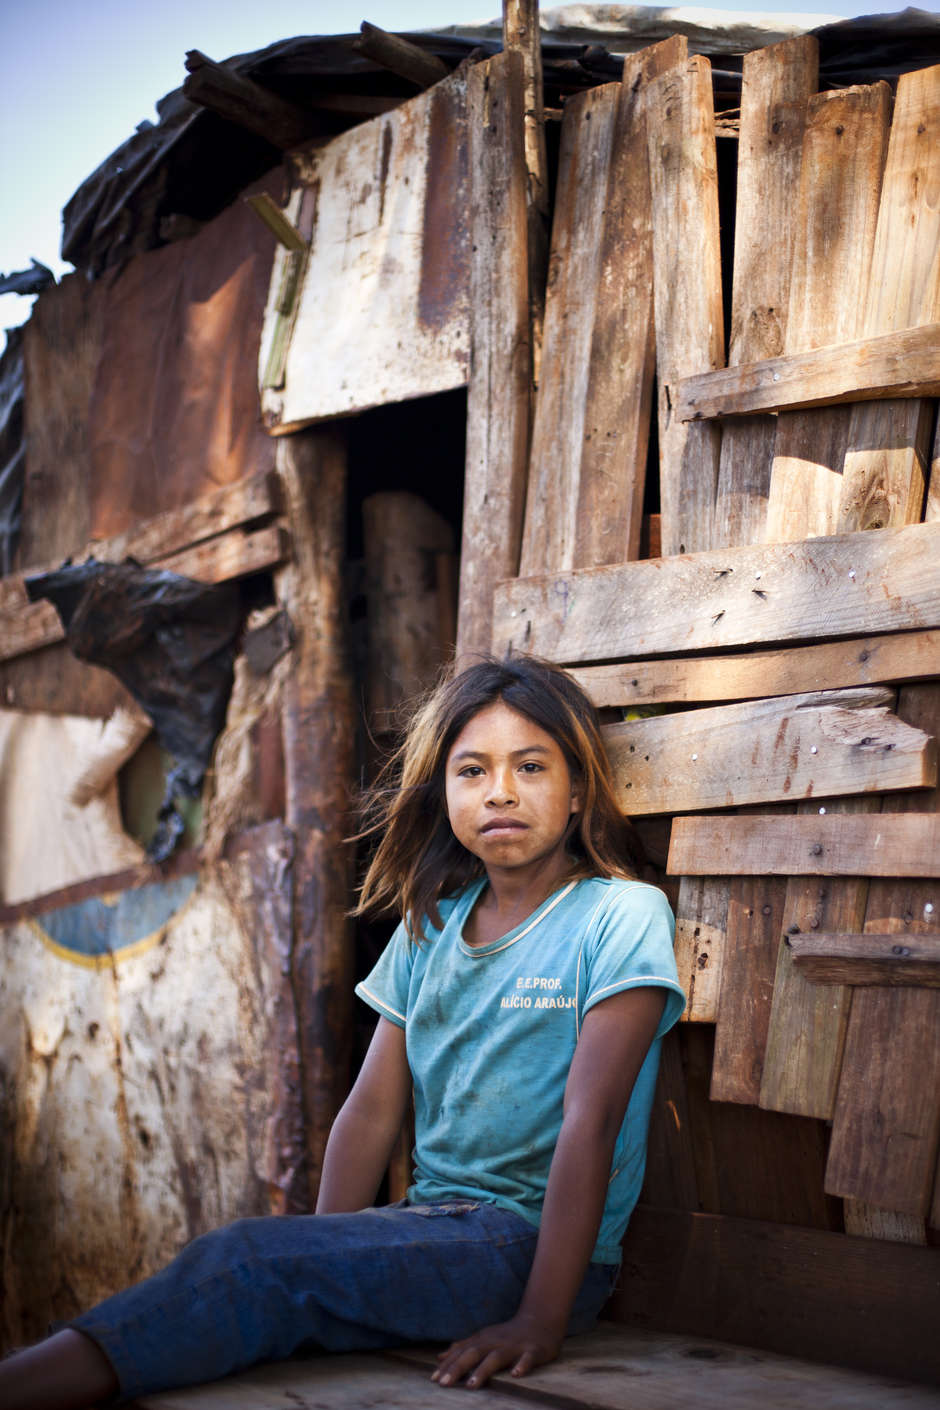 Die "Guarani":http://www.survivalinternational.de/indigene/guarani in Brasilien waren wohl unter den ersten indigenen Völkern, die nach der Ankunft der Europäer in Südamerika mit den Siedlern in Kontakt kamen. 

Damals lebten die Guarani in den Wäldern und Ebenen Brasiliens und ihre Heimat erstreckte sich über rund 560.000 Quadratkilometer. Heute haben sie fast ihre gesamte angestammte Heimat verloren; sie drängen sich auf winzigen Inseln verbliebenen Landes, umgeben von einem Meer aus Viehweiden, Soja und Zuckerrohr. Einigen ist nicht einmal dieses wenige geblieben und sie leben in Lagern am Straßenrand. 

In den letzten 30 Jahren haben sich mehr als 625 Guarani das Leben genommen. Die Mehrheit der Opfer war zwischen 15 und 29 Jahre alt. Das jüngste bekannte Opfer war gerade einmal neun Jahre.